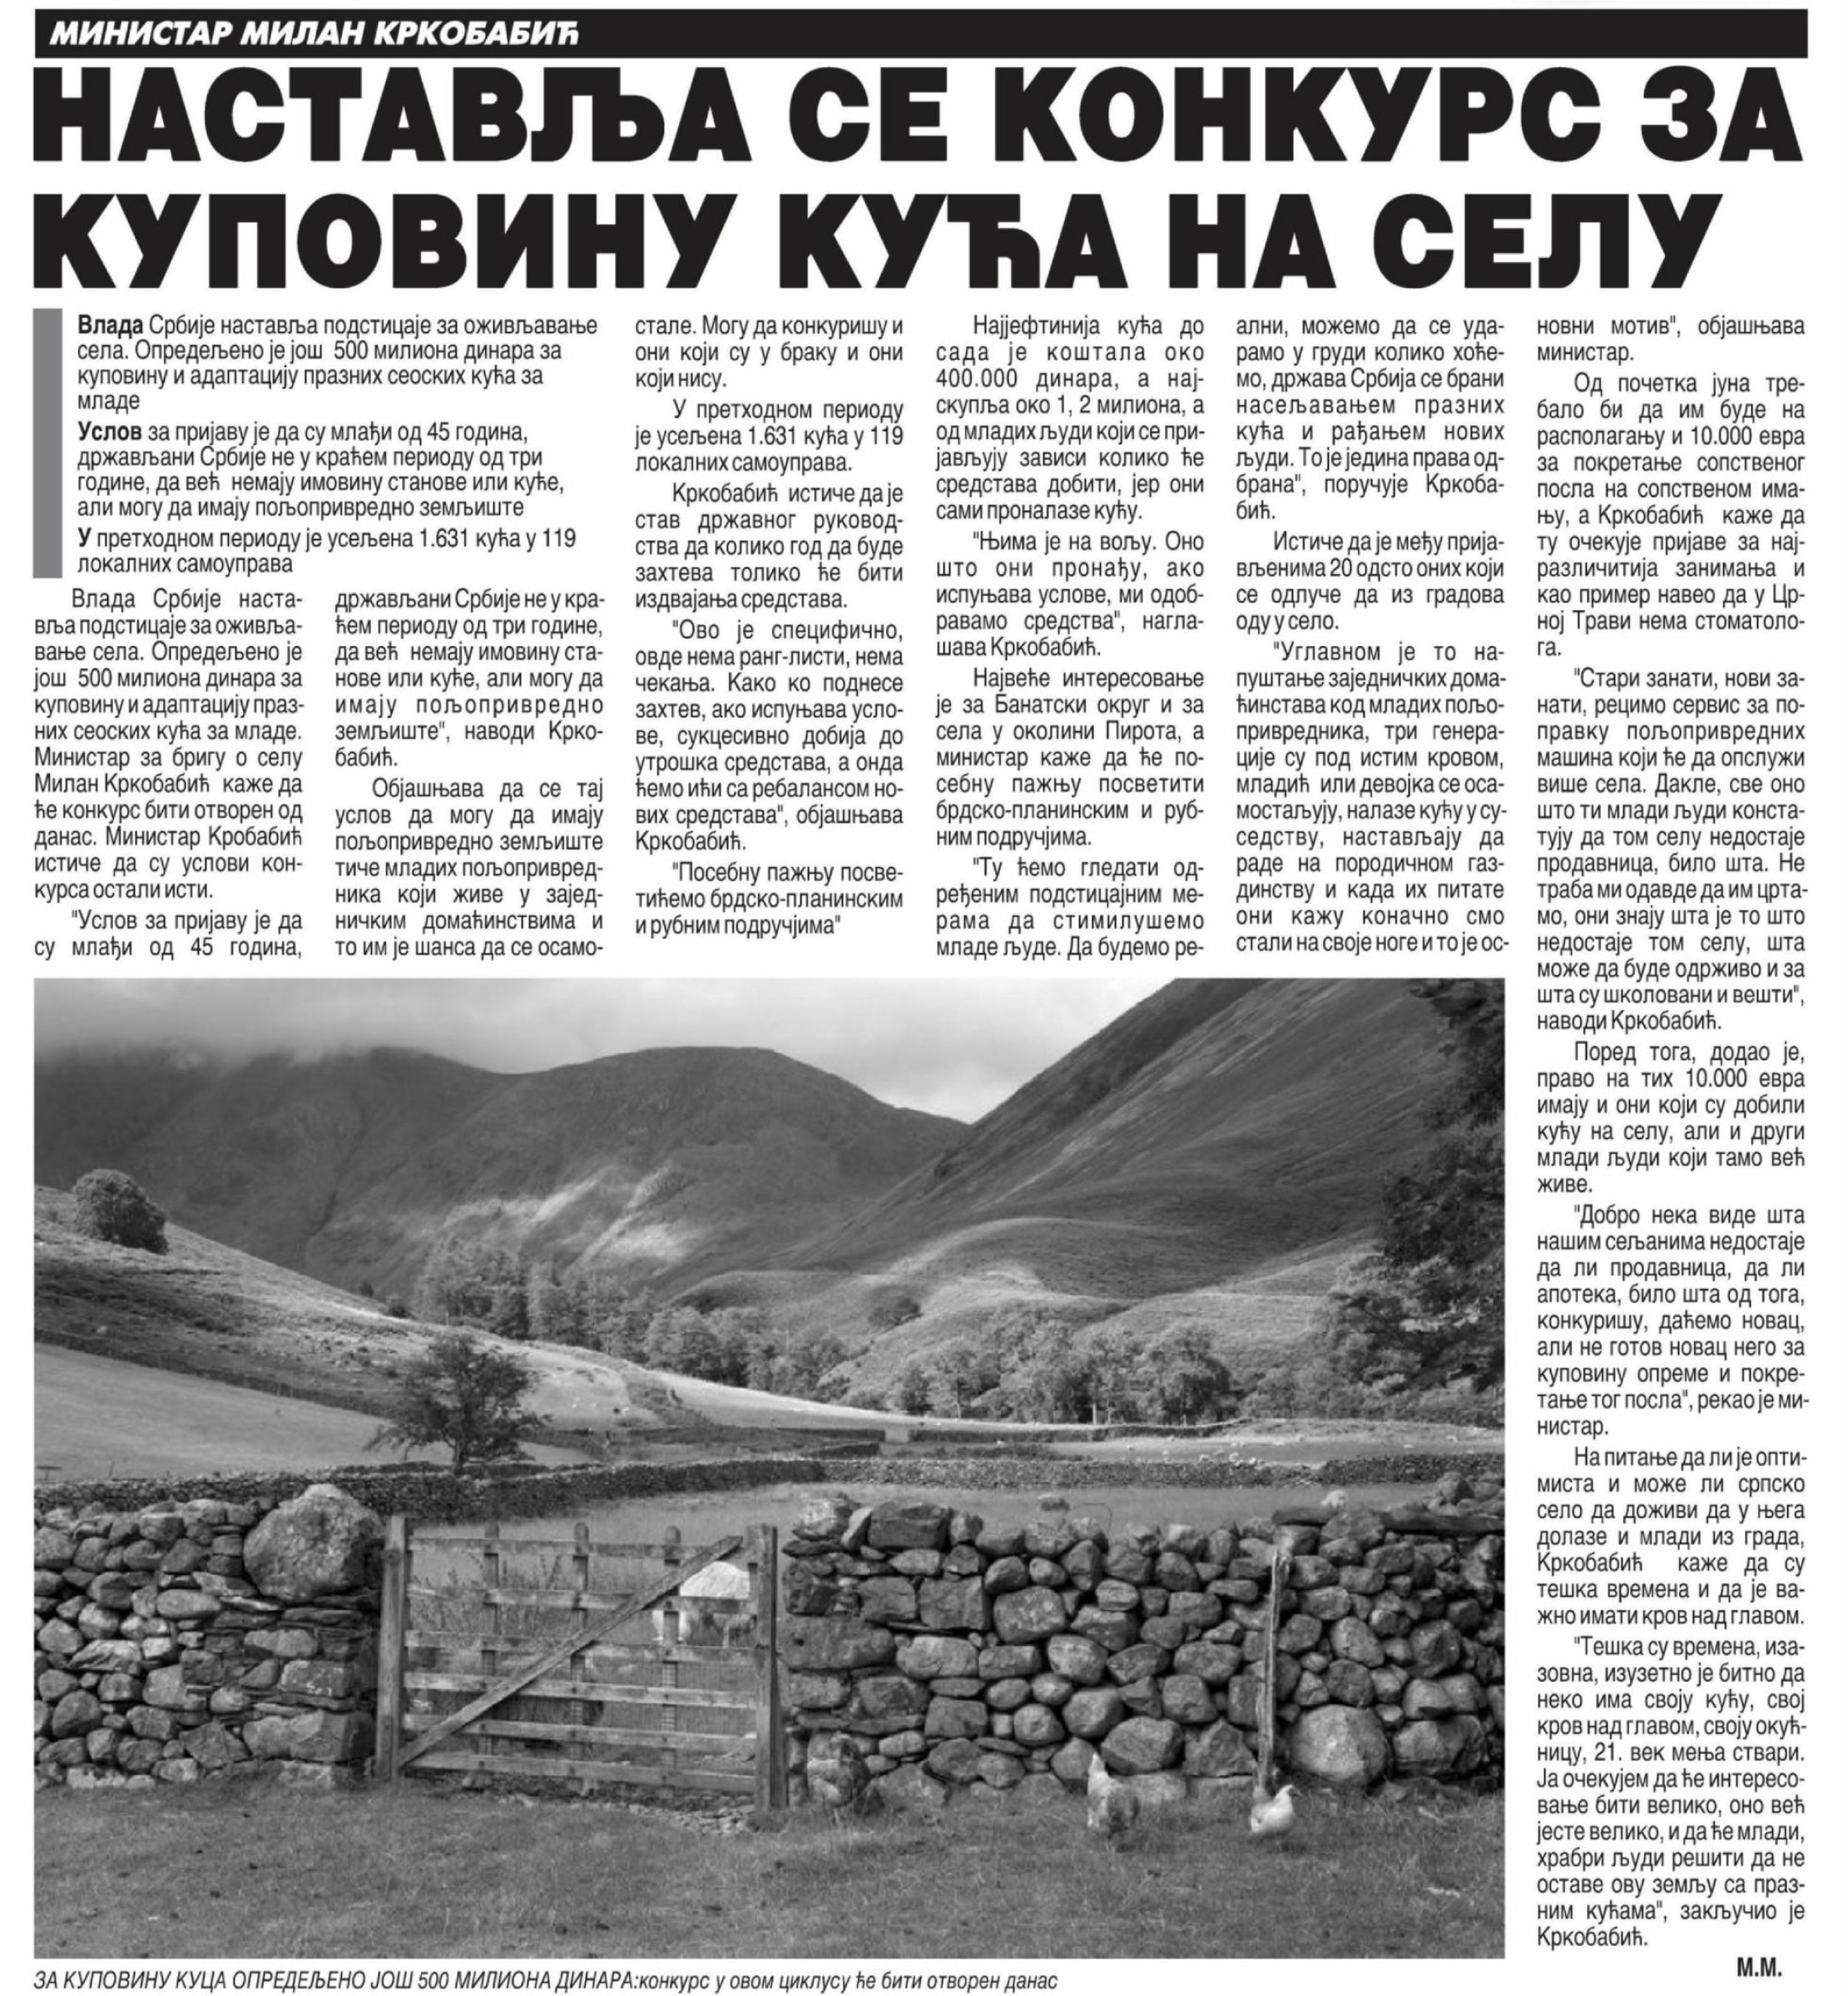  Народне новине Ниш 